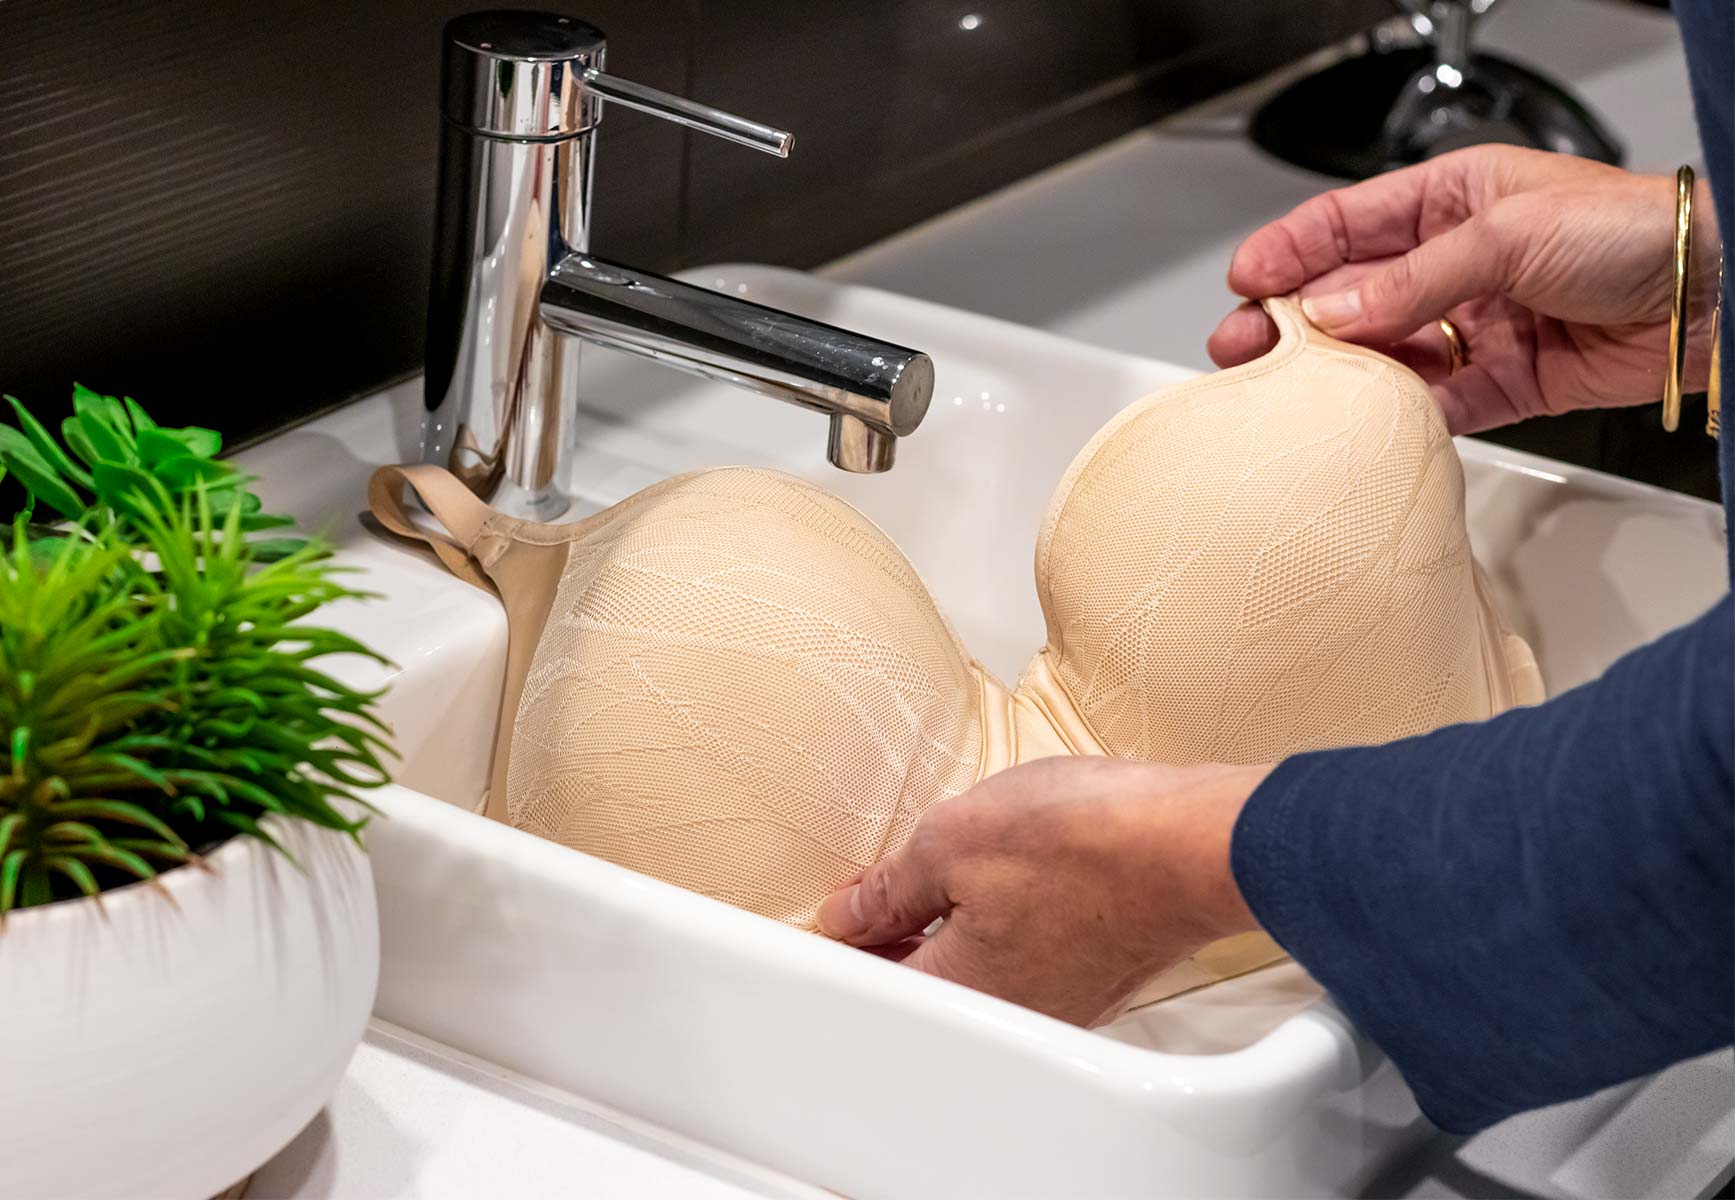 Washing nude bra in sink